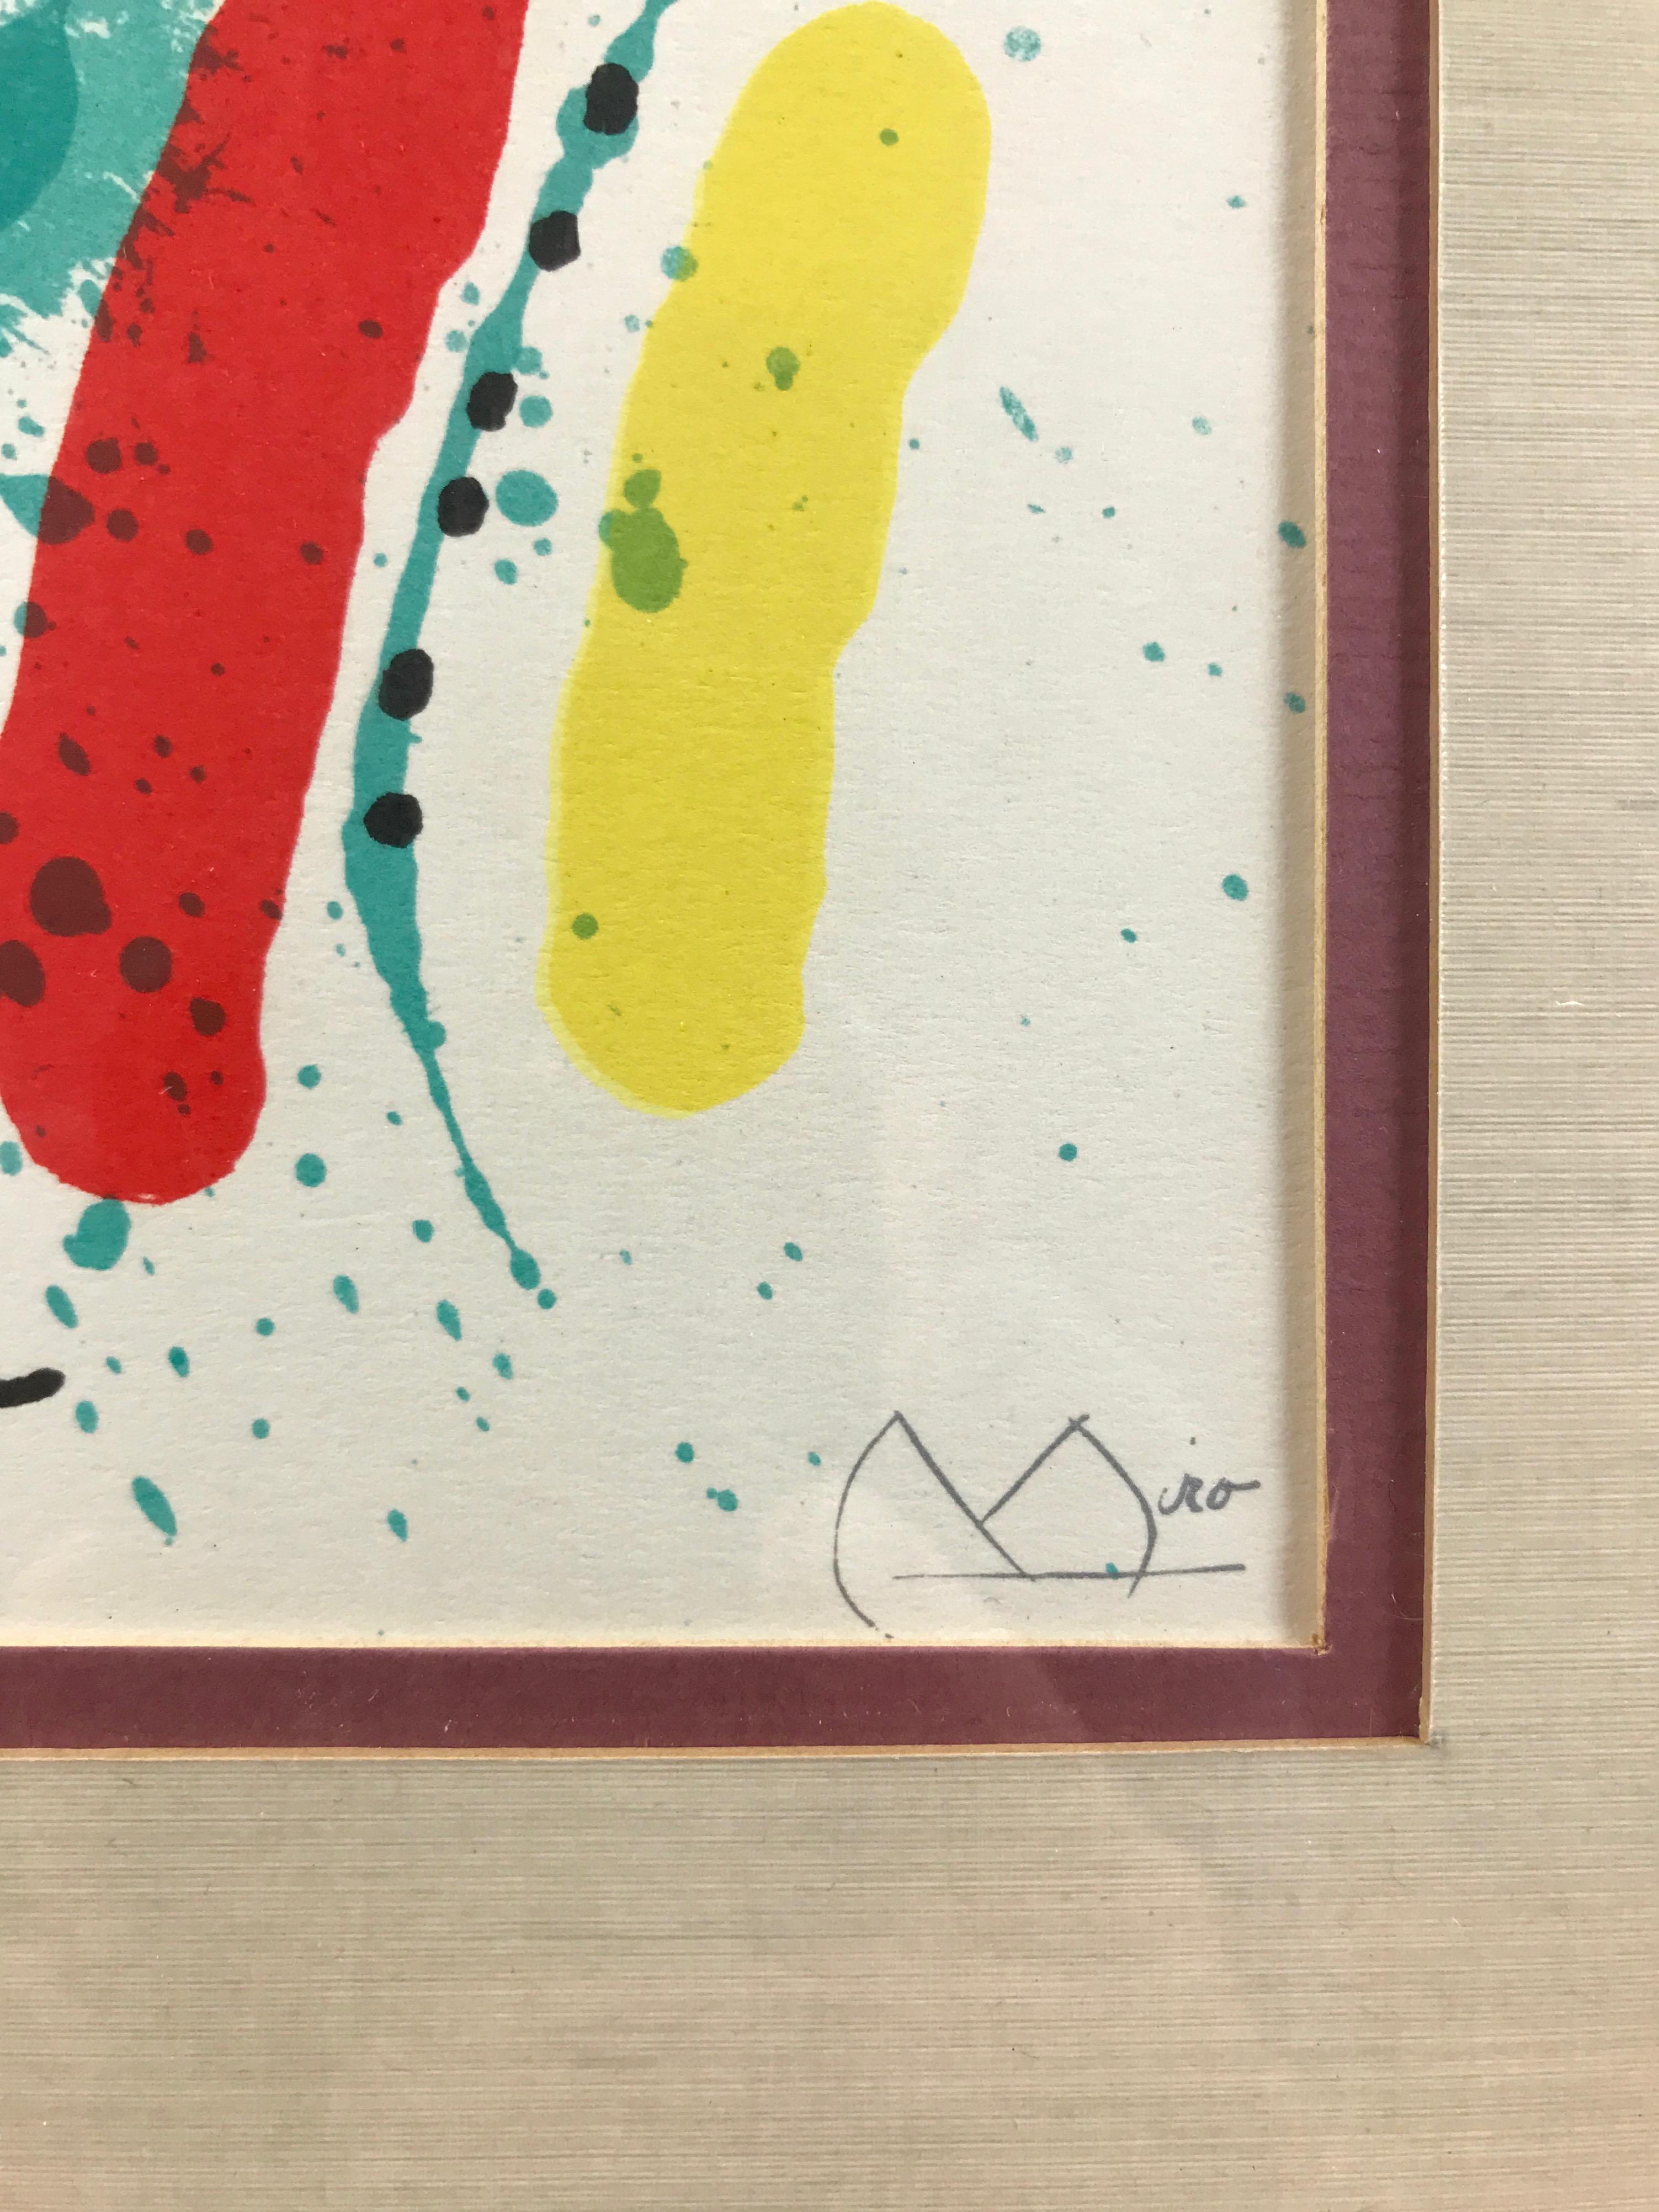 Mid-Century Modern Joan Miró “Le Chanteur, ou Le Poisson Chantant” Framed Lithograph, Signed, 1972